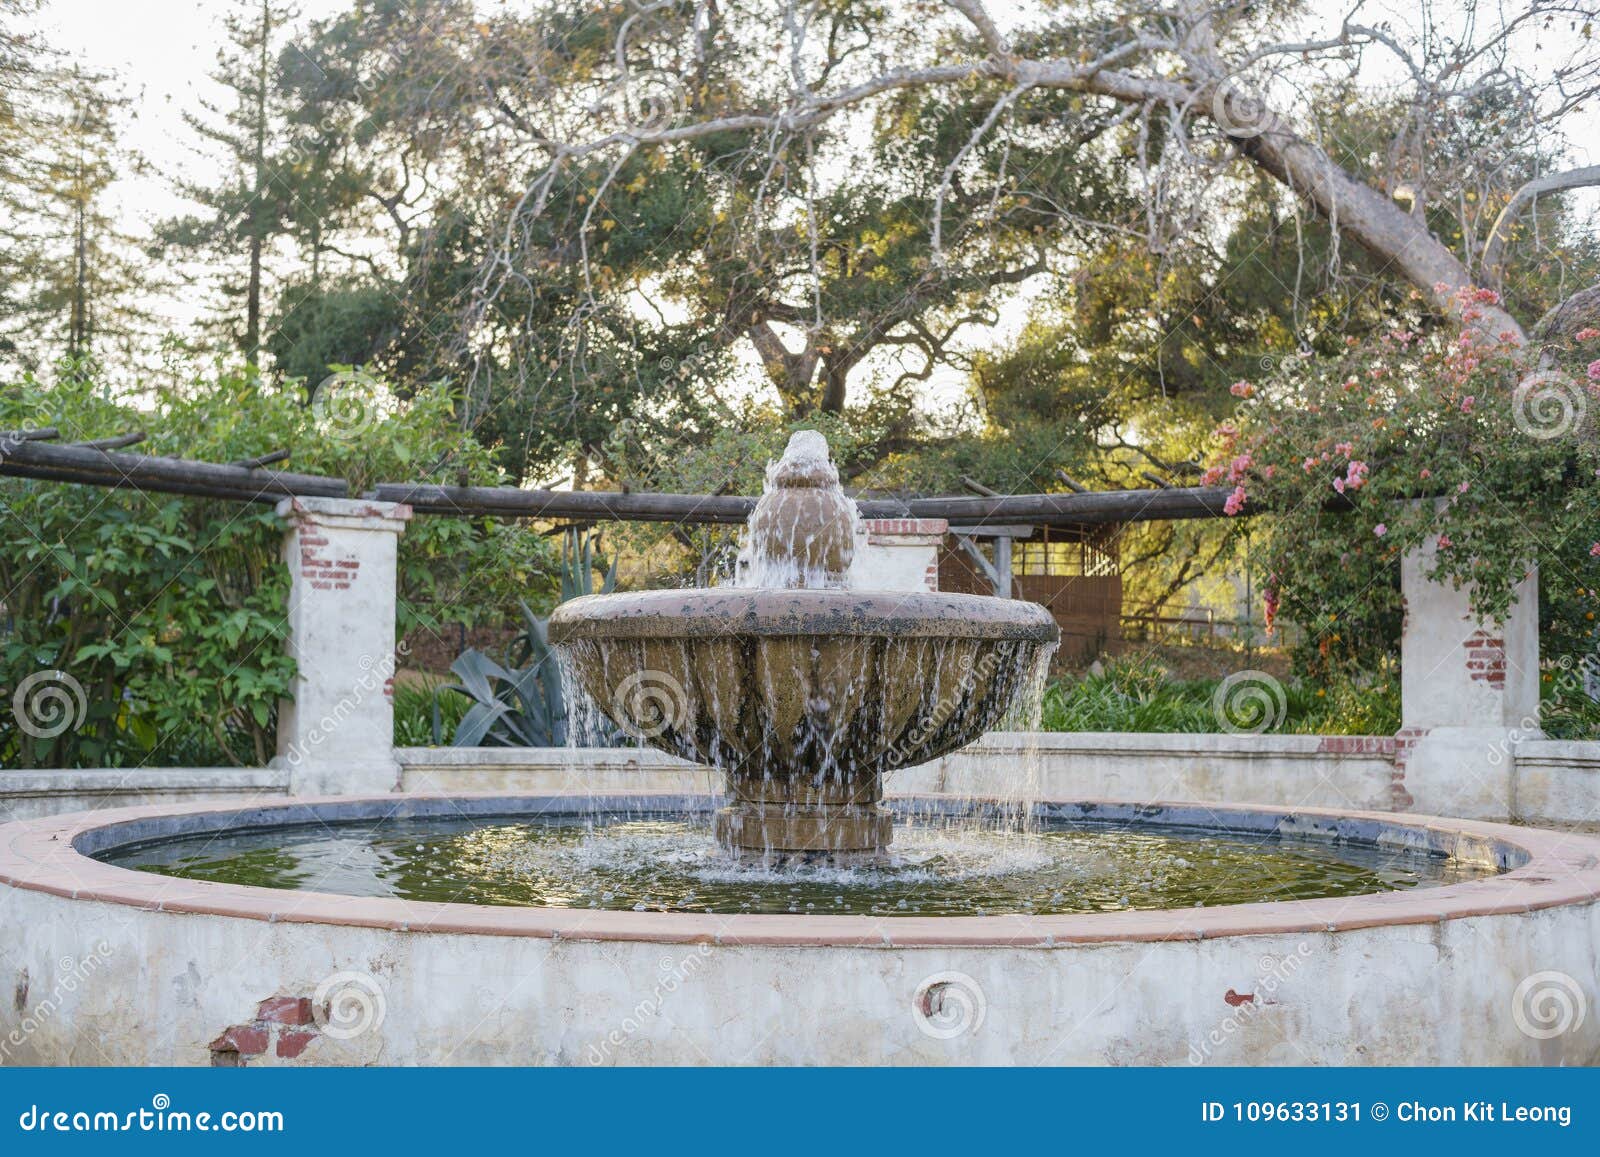 beautiful fountain of descanso garden